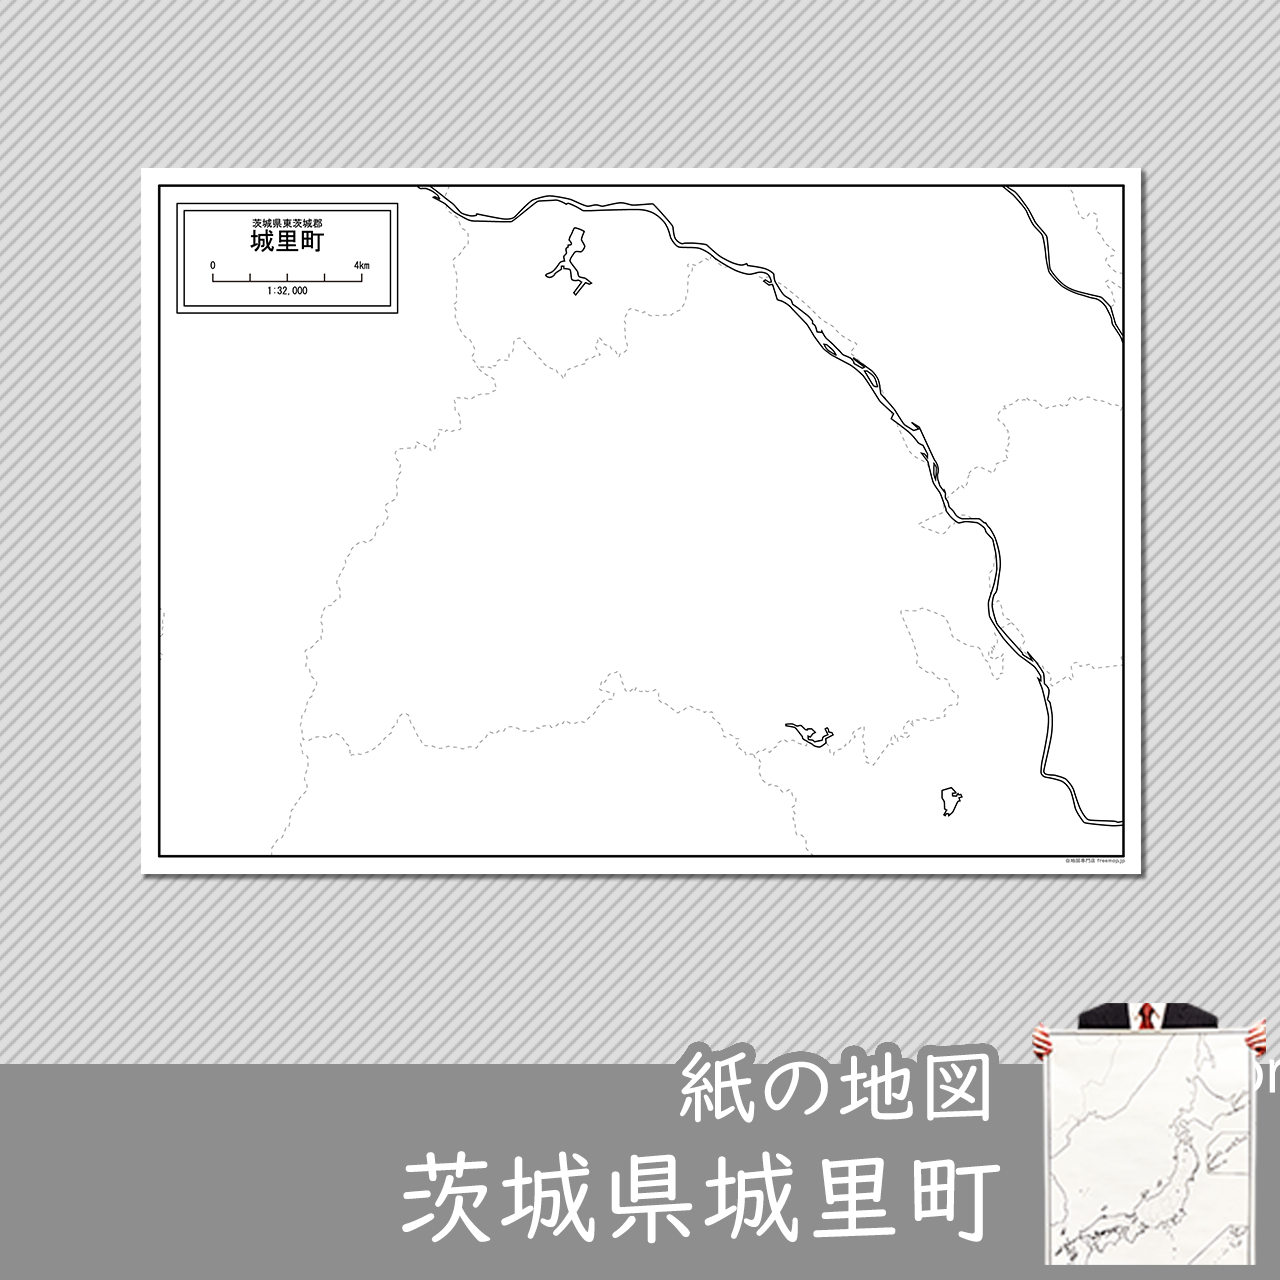 城里町の紙の白地図のサムネイル